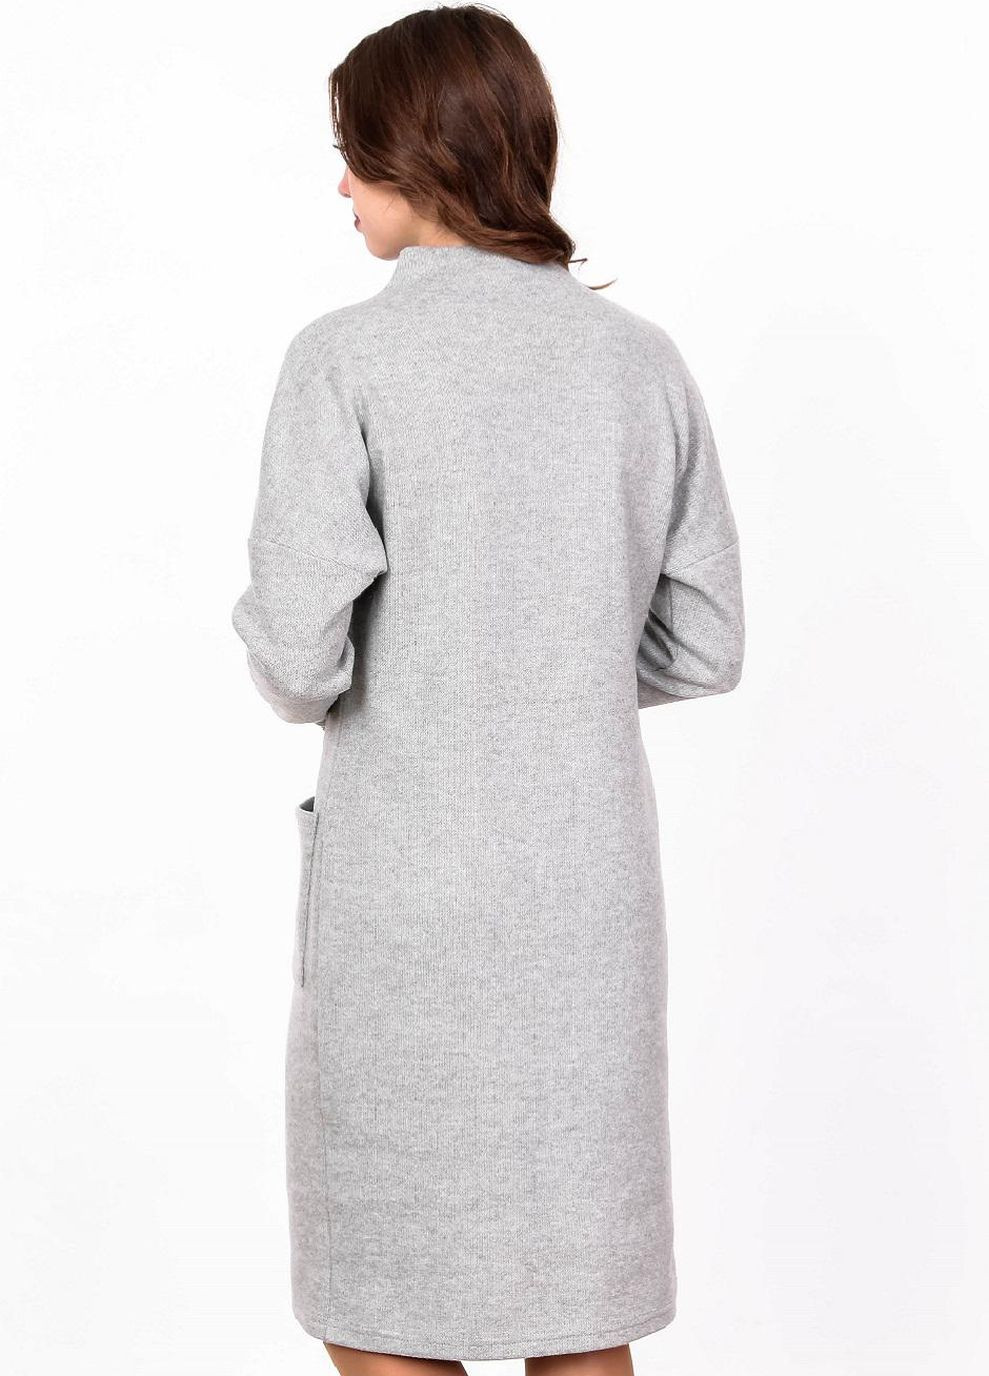 Сіра кежуал сукня тепла жіноча 114 однотонний ангора в'язка сіра Актуаль